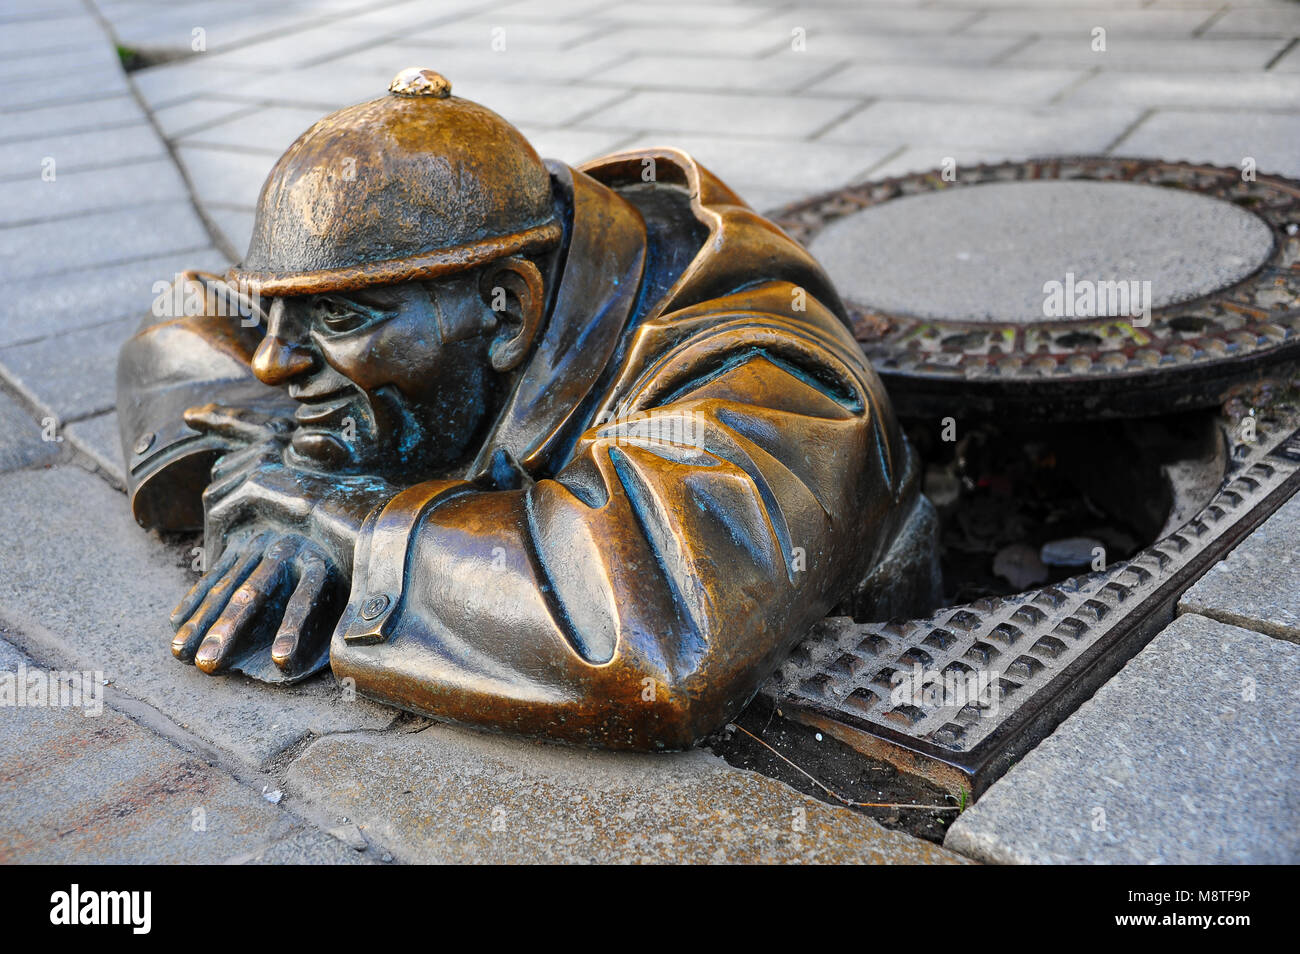 Bratislava, Slovaquie : sculpture en bronze de 'Cumil, le Watcher', vieille ville de coin de rue. Banque D'Images